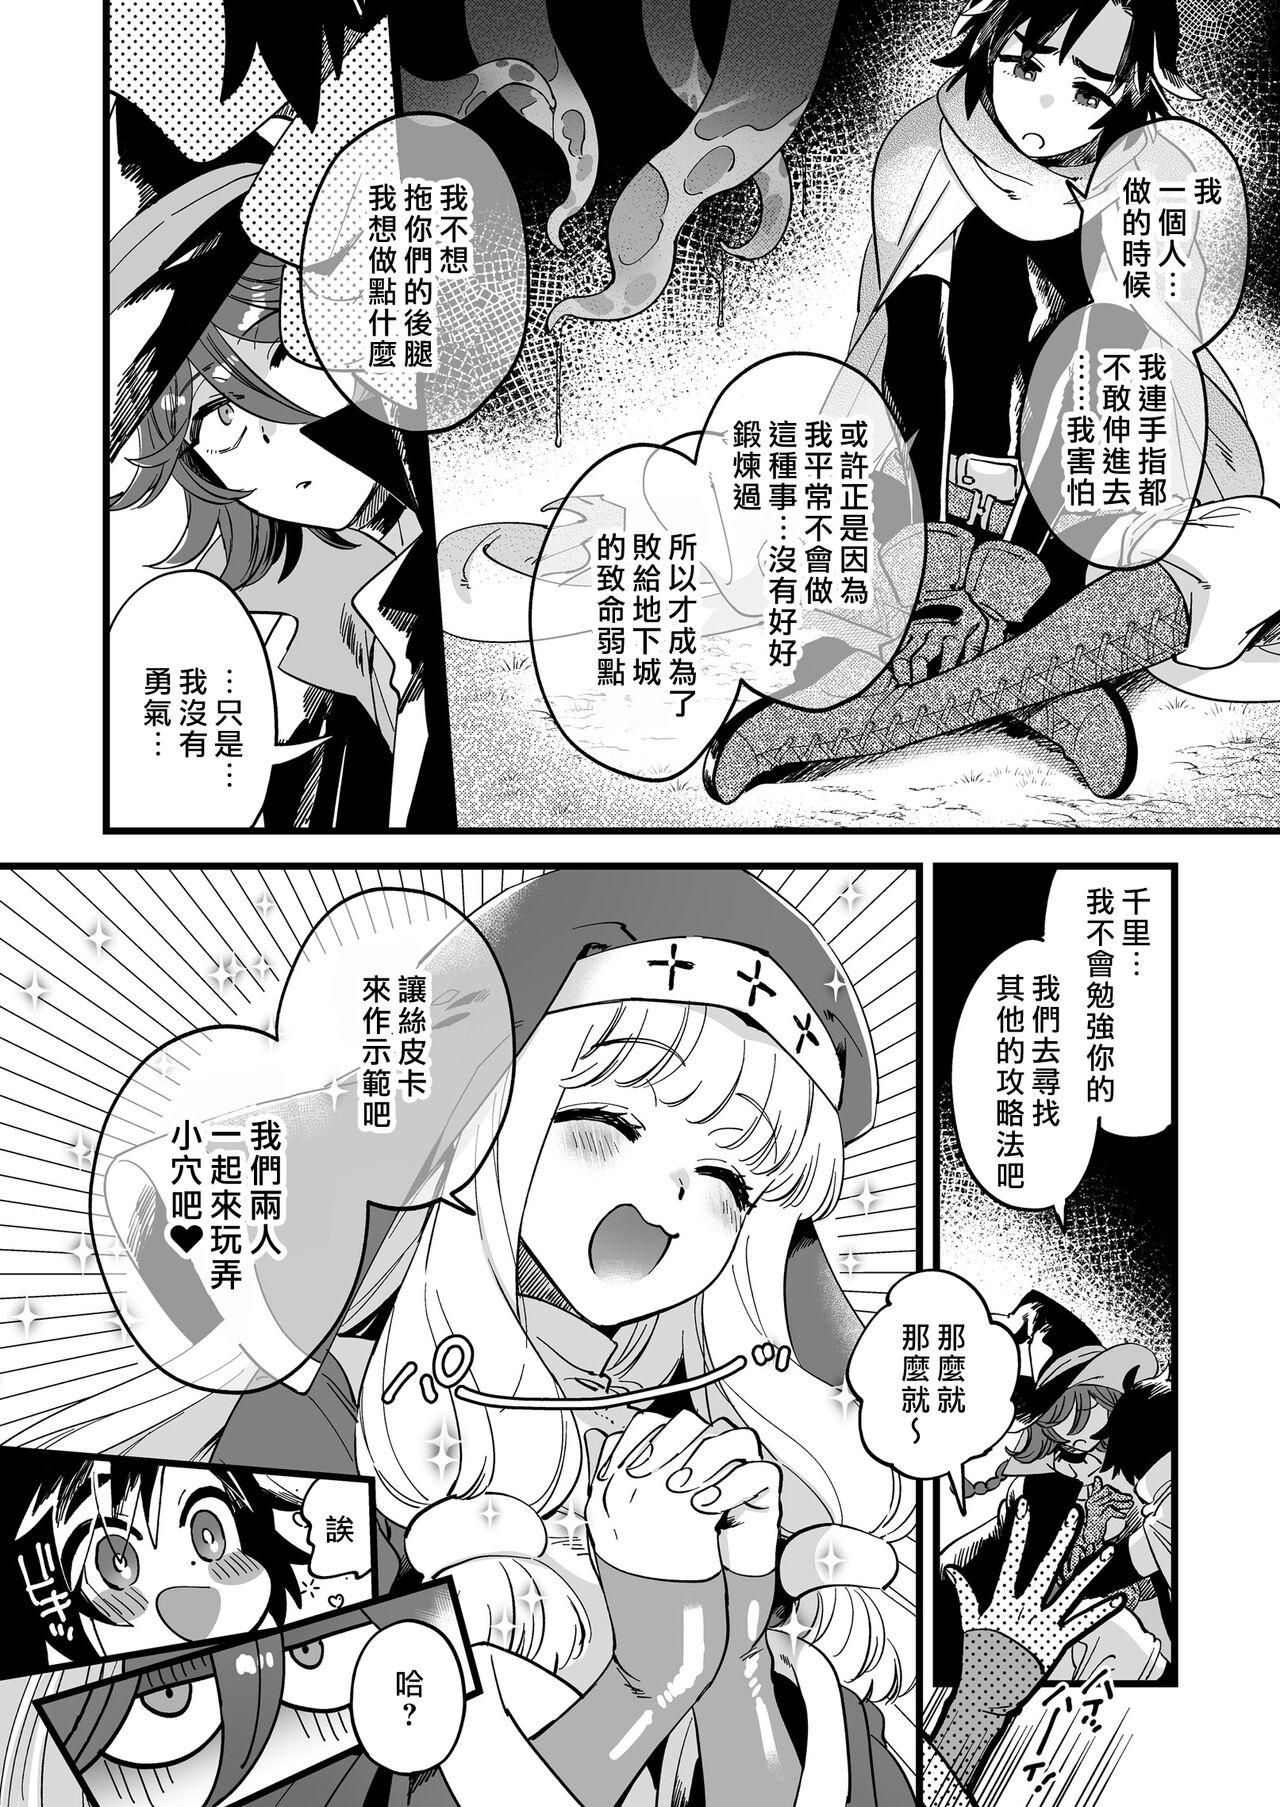 Ano Nakayoshi Onna Boukensya ha Himitsu no tokkun wo Shiteiru rasii | 關係很好的女冒險者們似乎正在進行秘密❤特訓 - Original Mum - Page 7